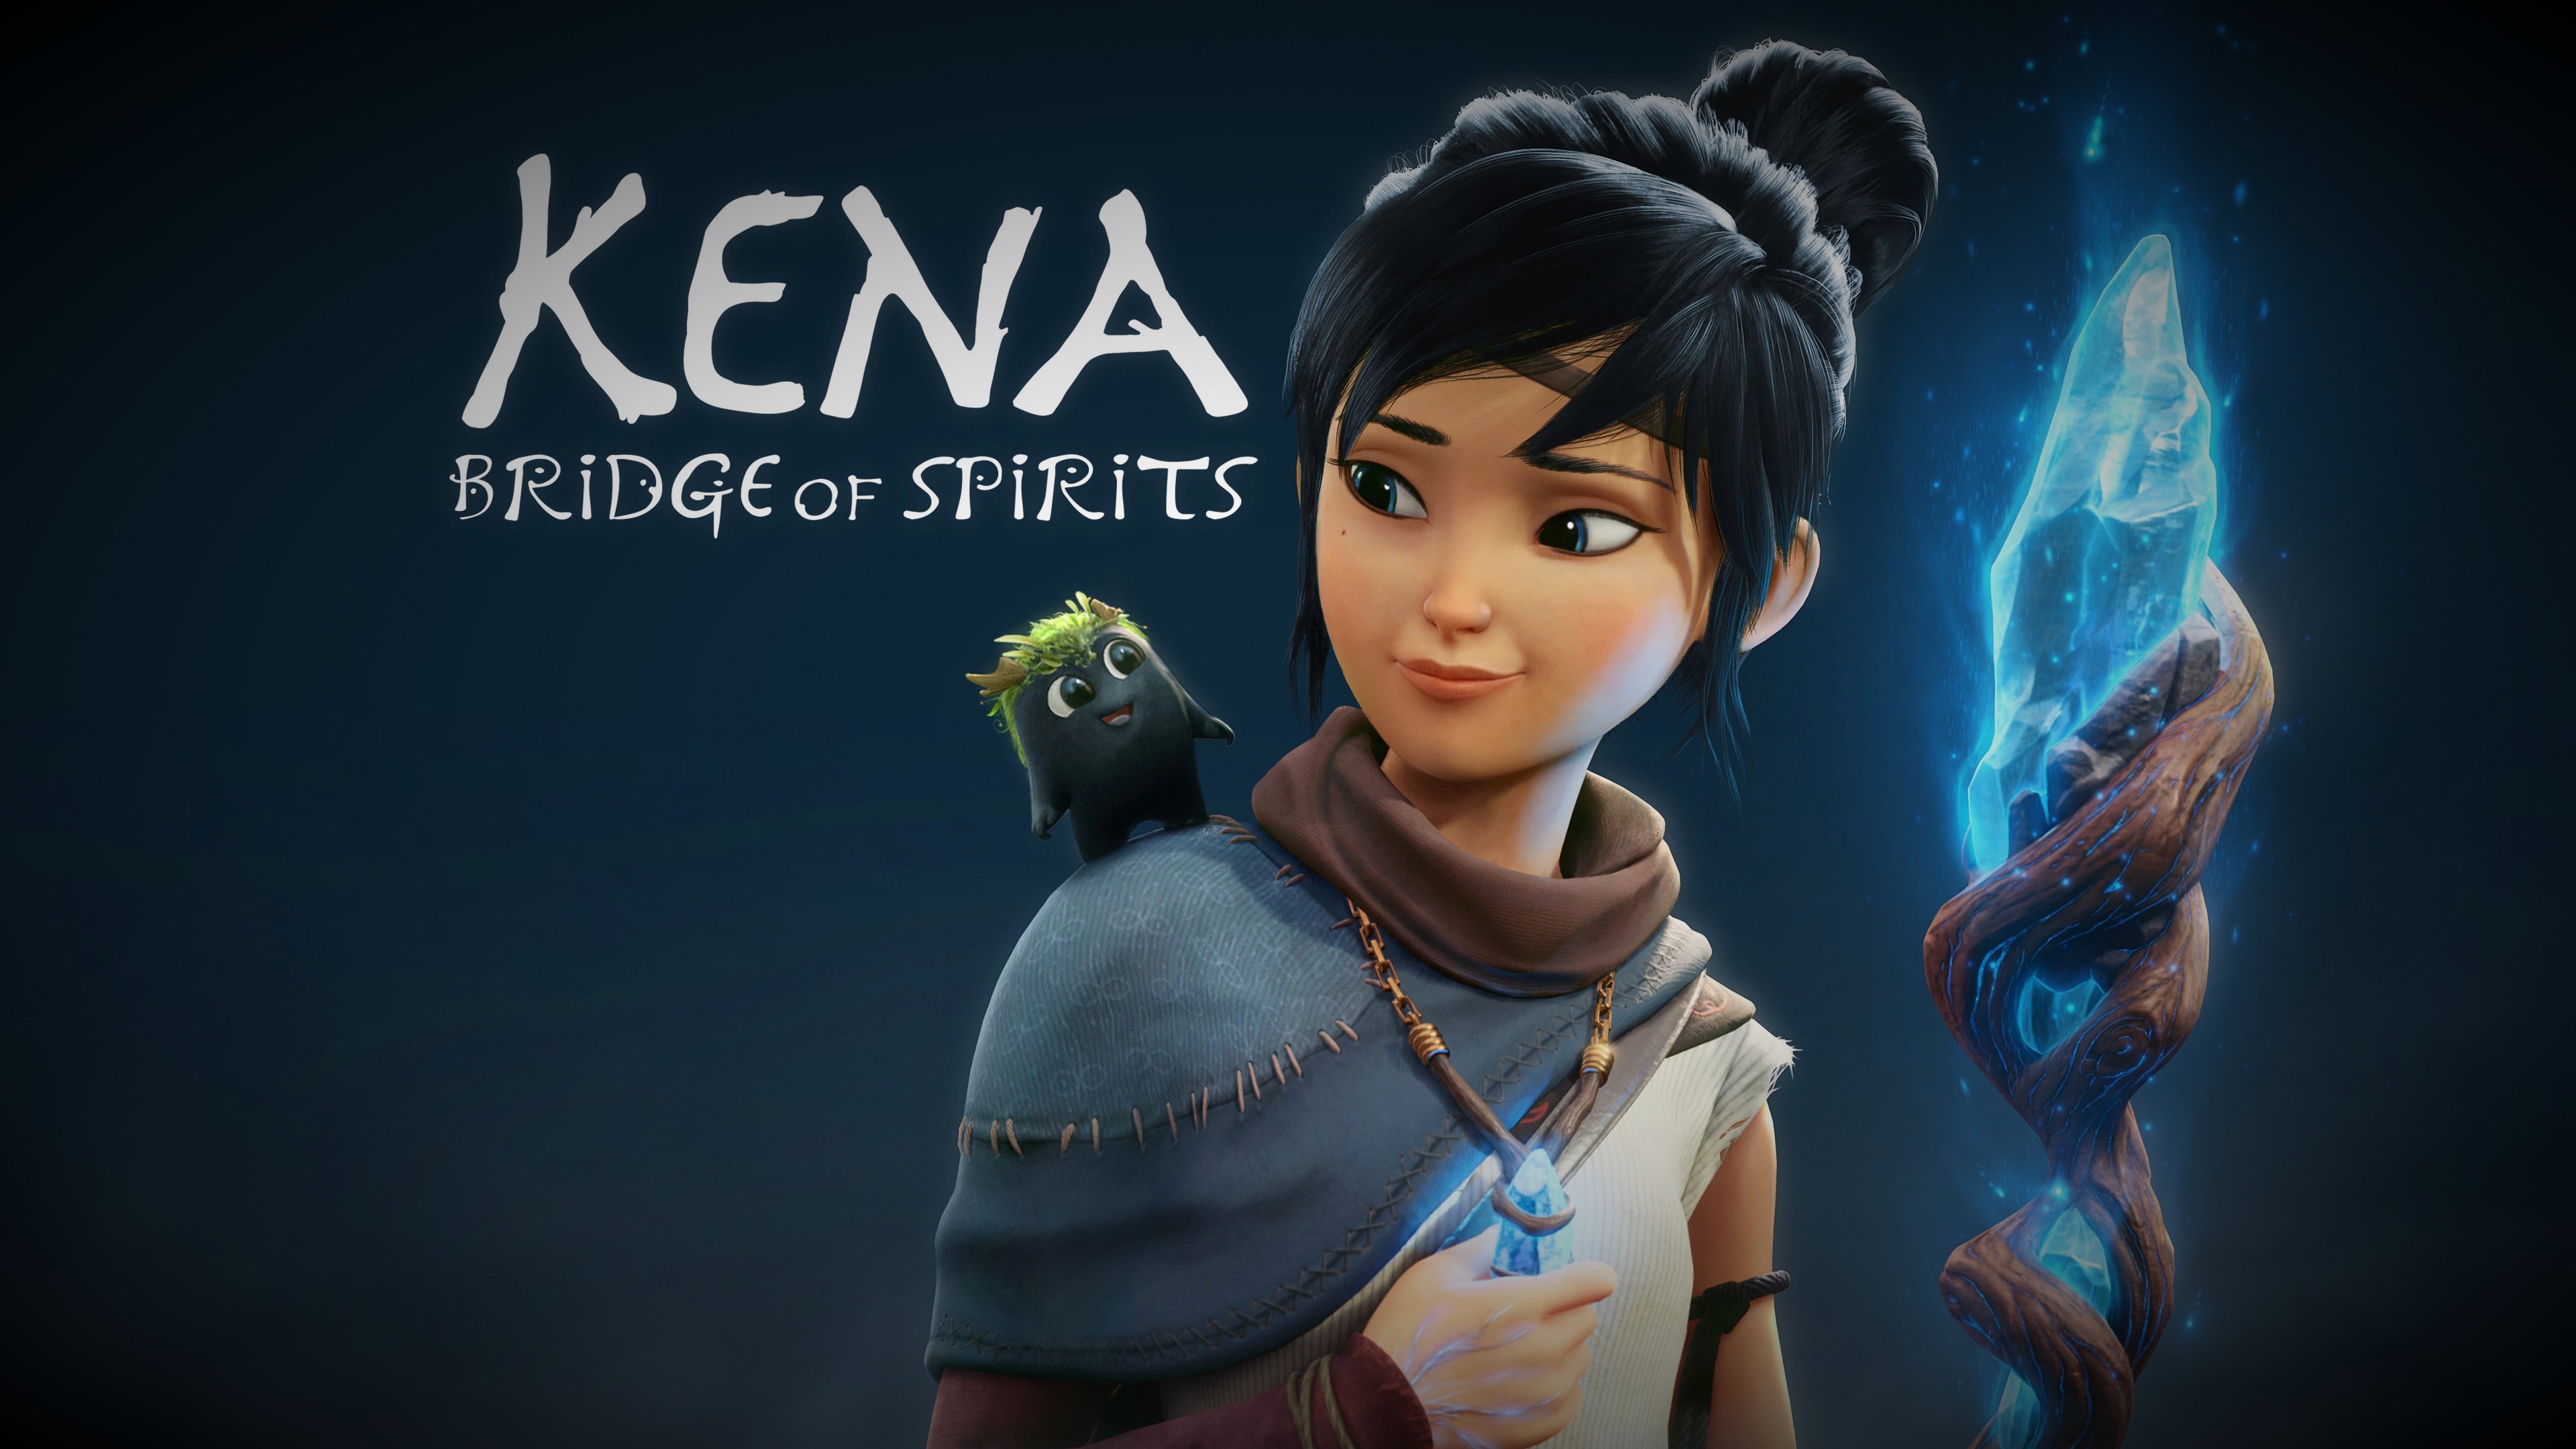 KENA: BRIDGE OF SPIRITS